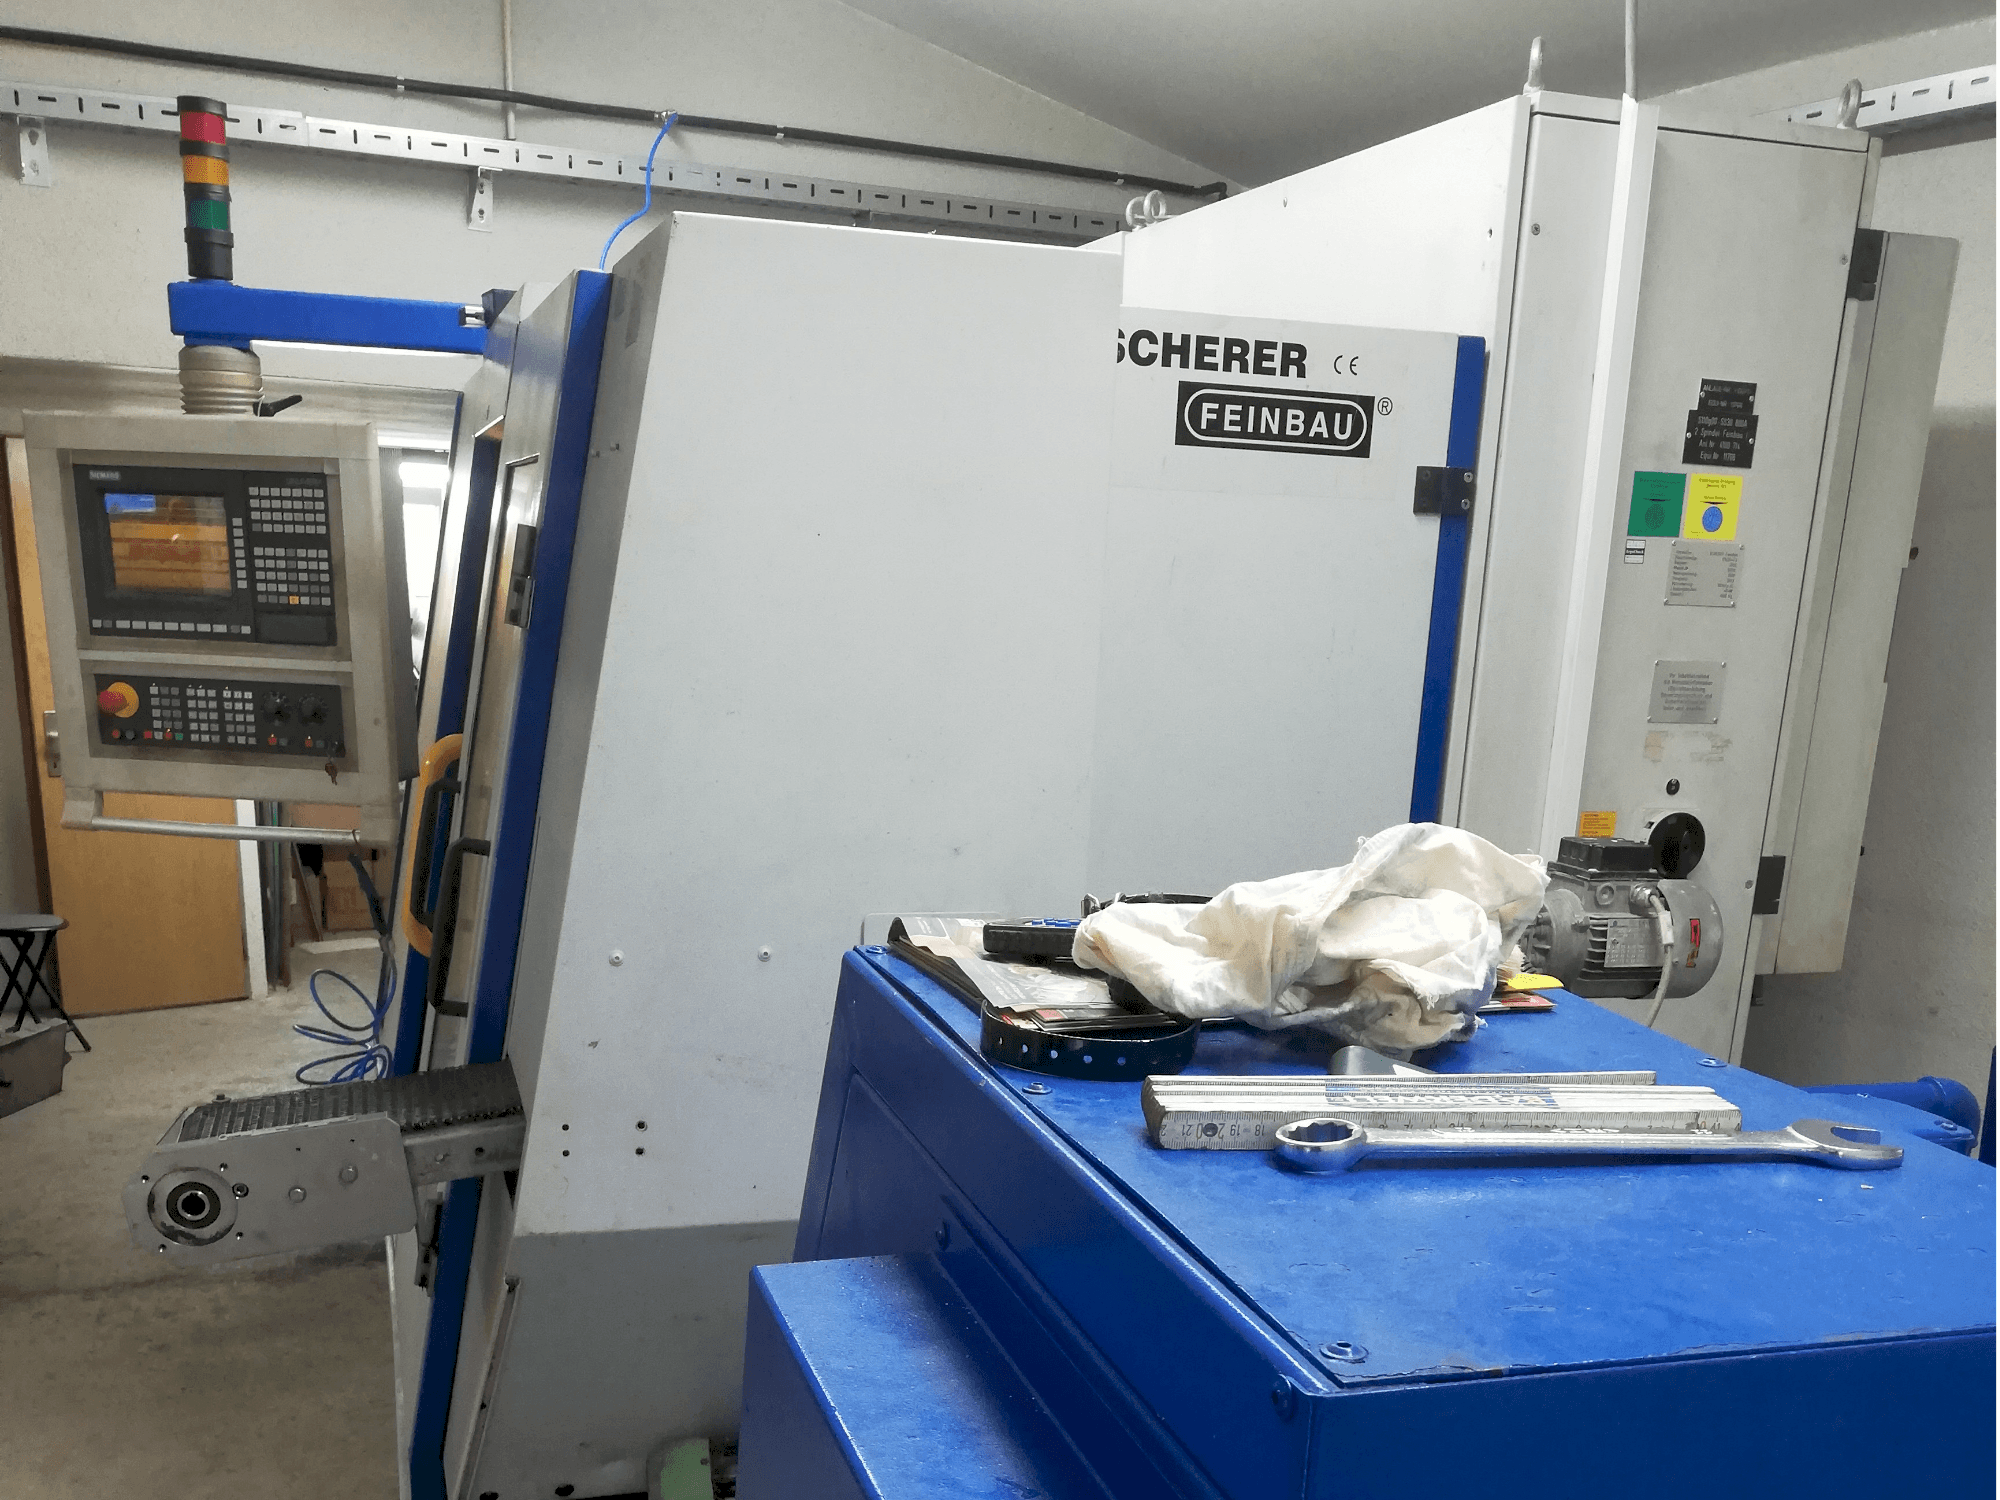 Frontansicht der Scherer - Feinbau CNC244/2  Maschine